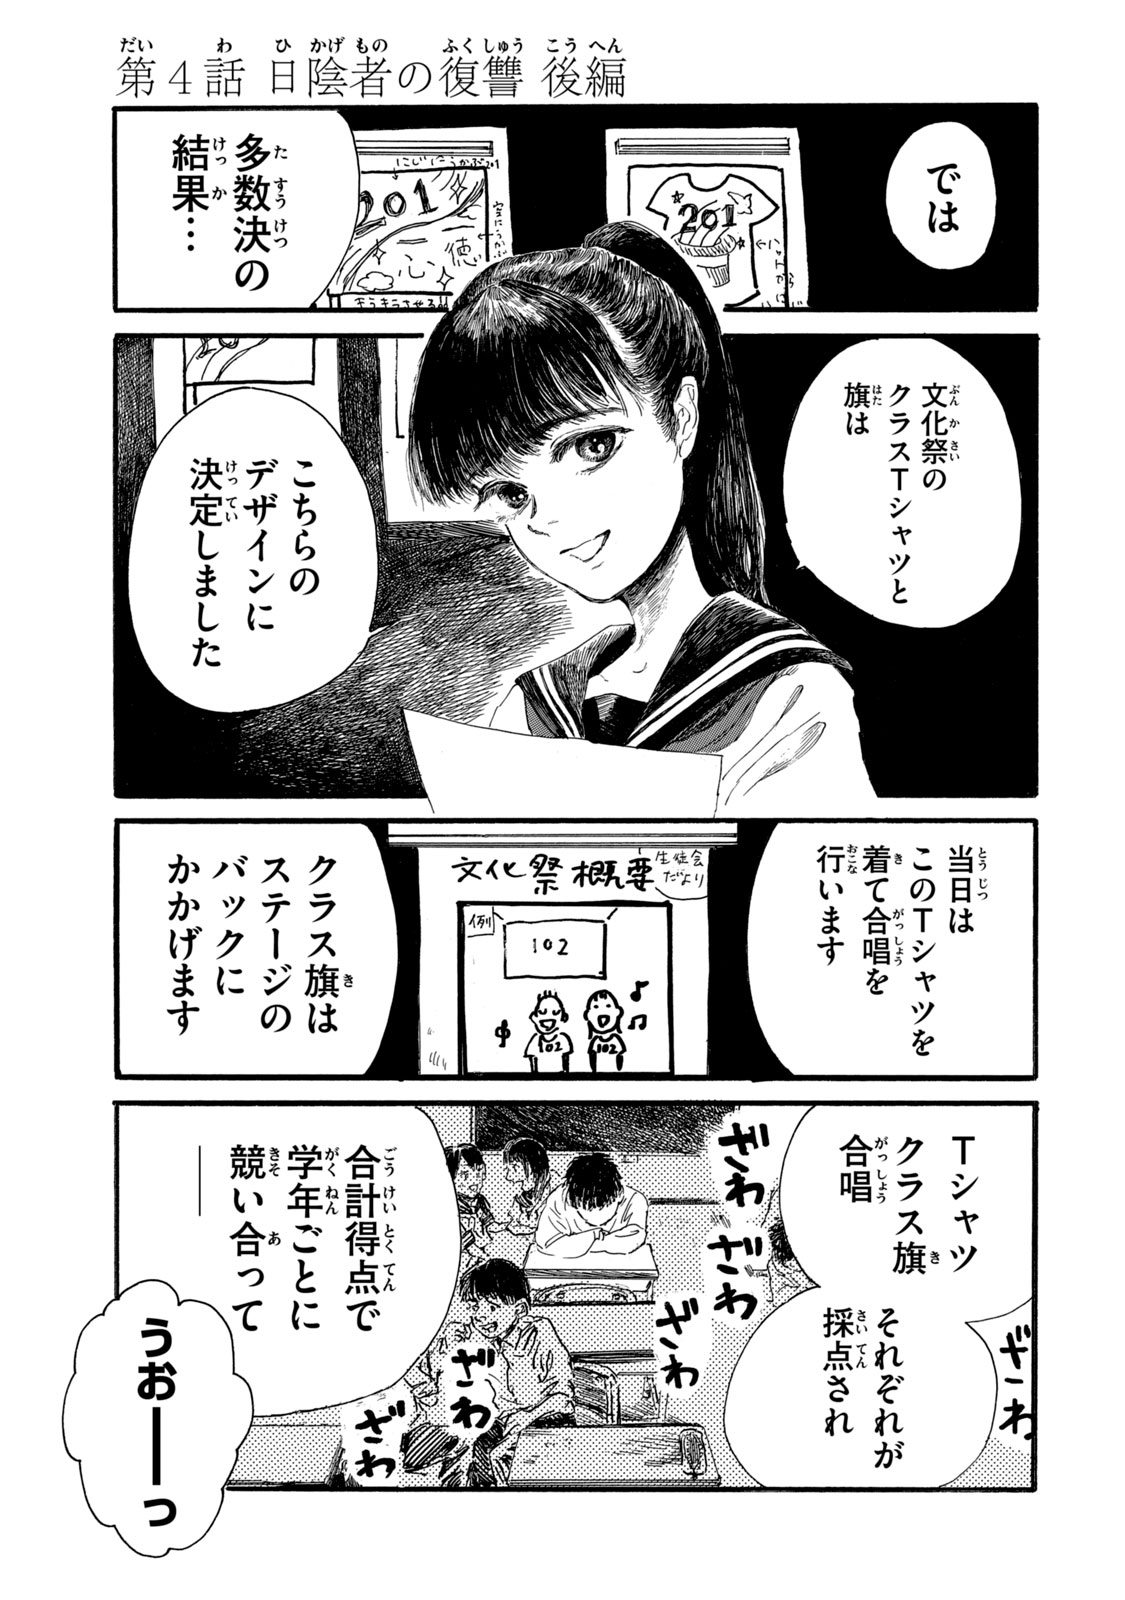 Watashi no Hara no Naka no Bakemono - Chapter 8 - Page 1